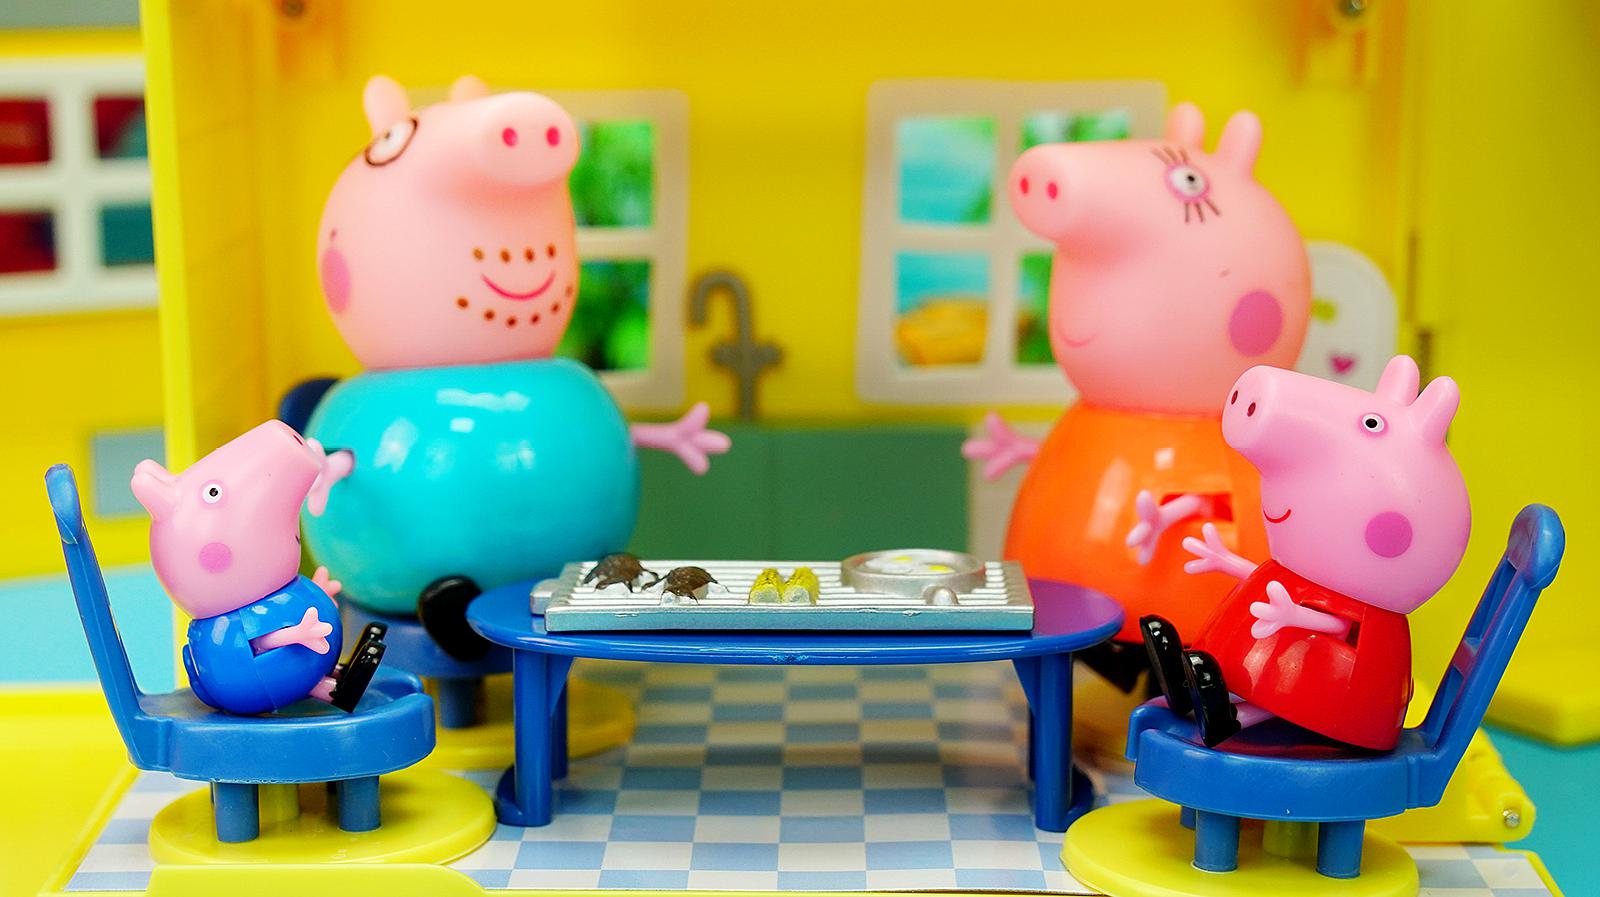 "玩具大联萌"之早教视频:小猪佩奇玩具故事